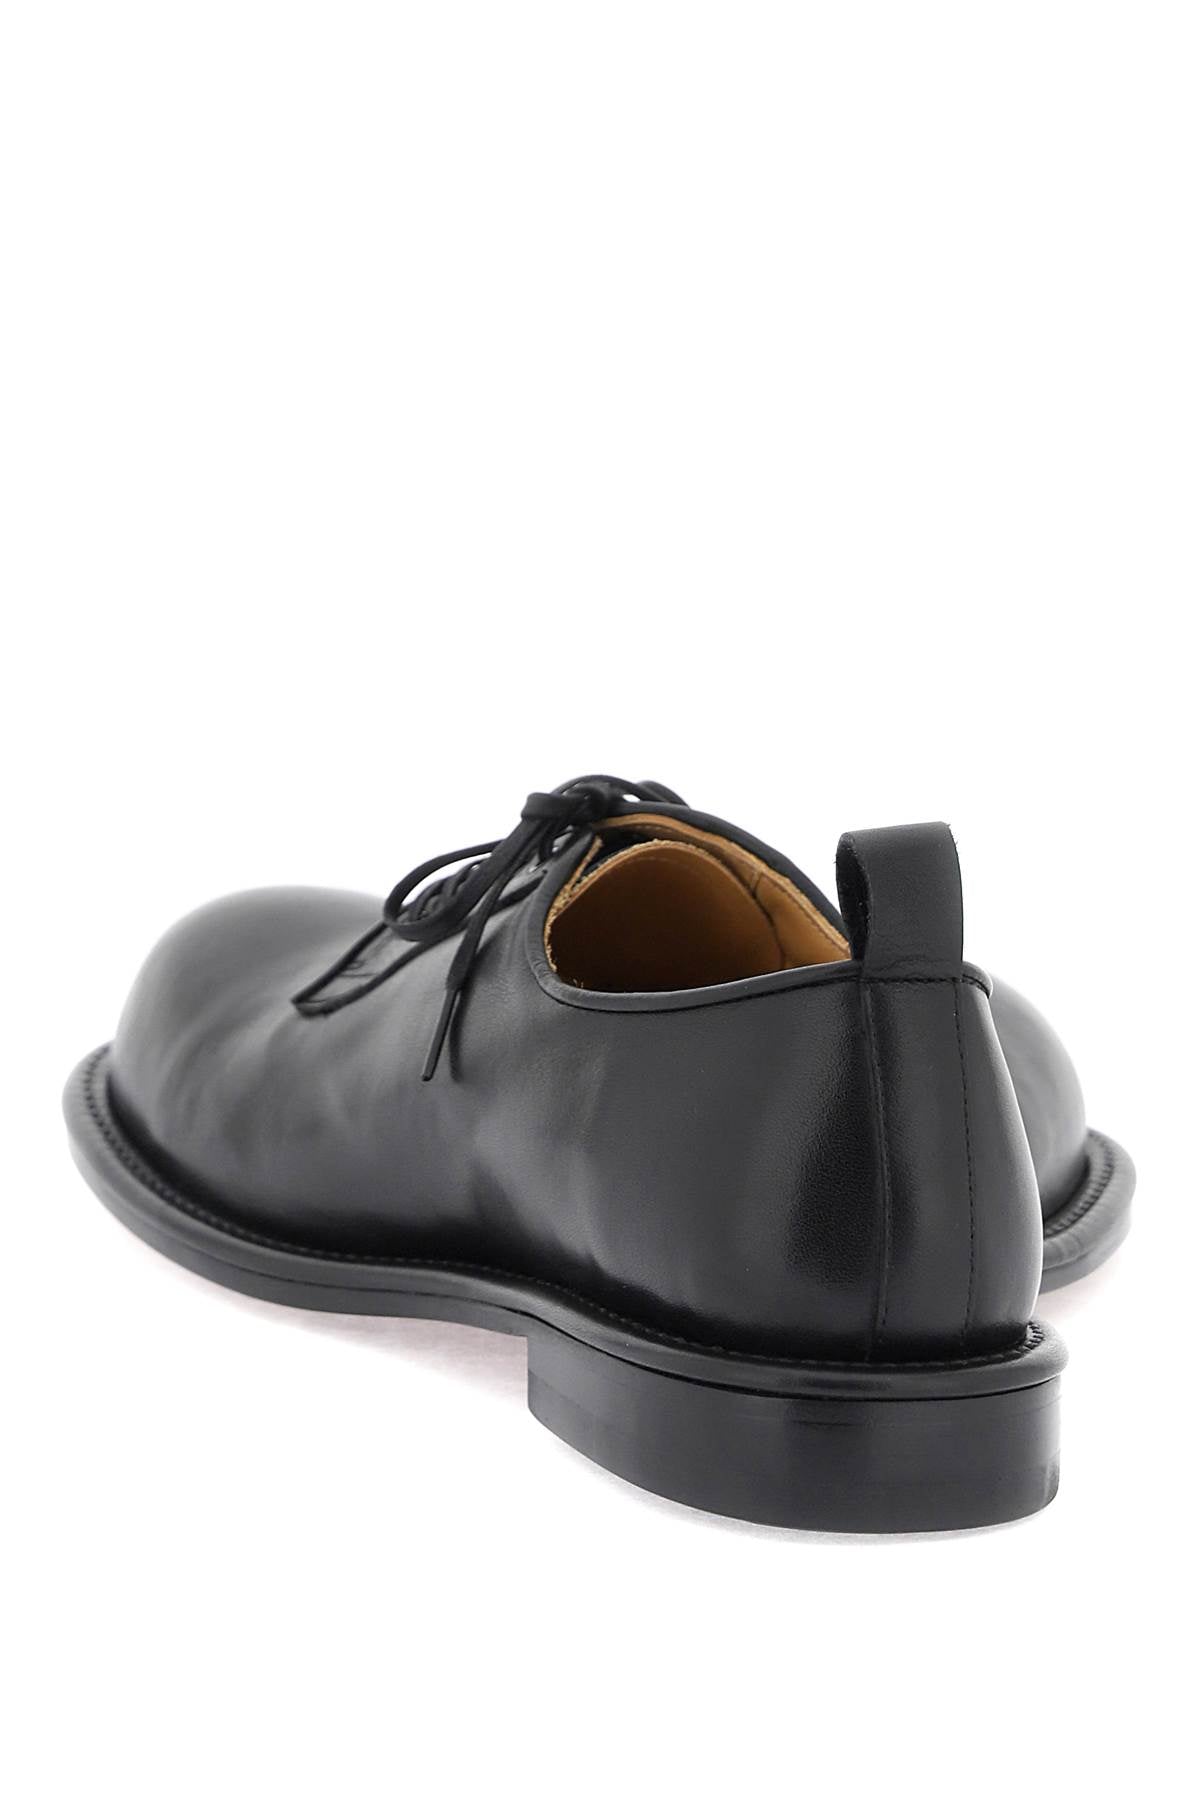 COMME DES GARÇONS HOMME PLUS Double-Tipped Derby Dress Shoes in Black for Men - Heart-Shaped Design